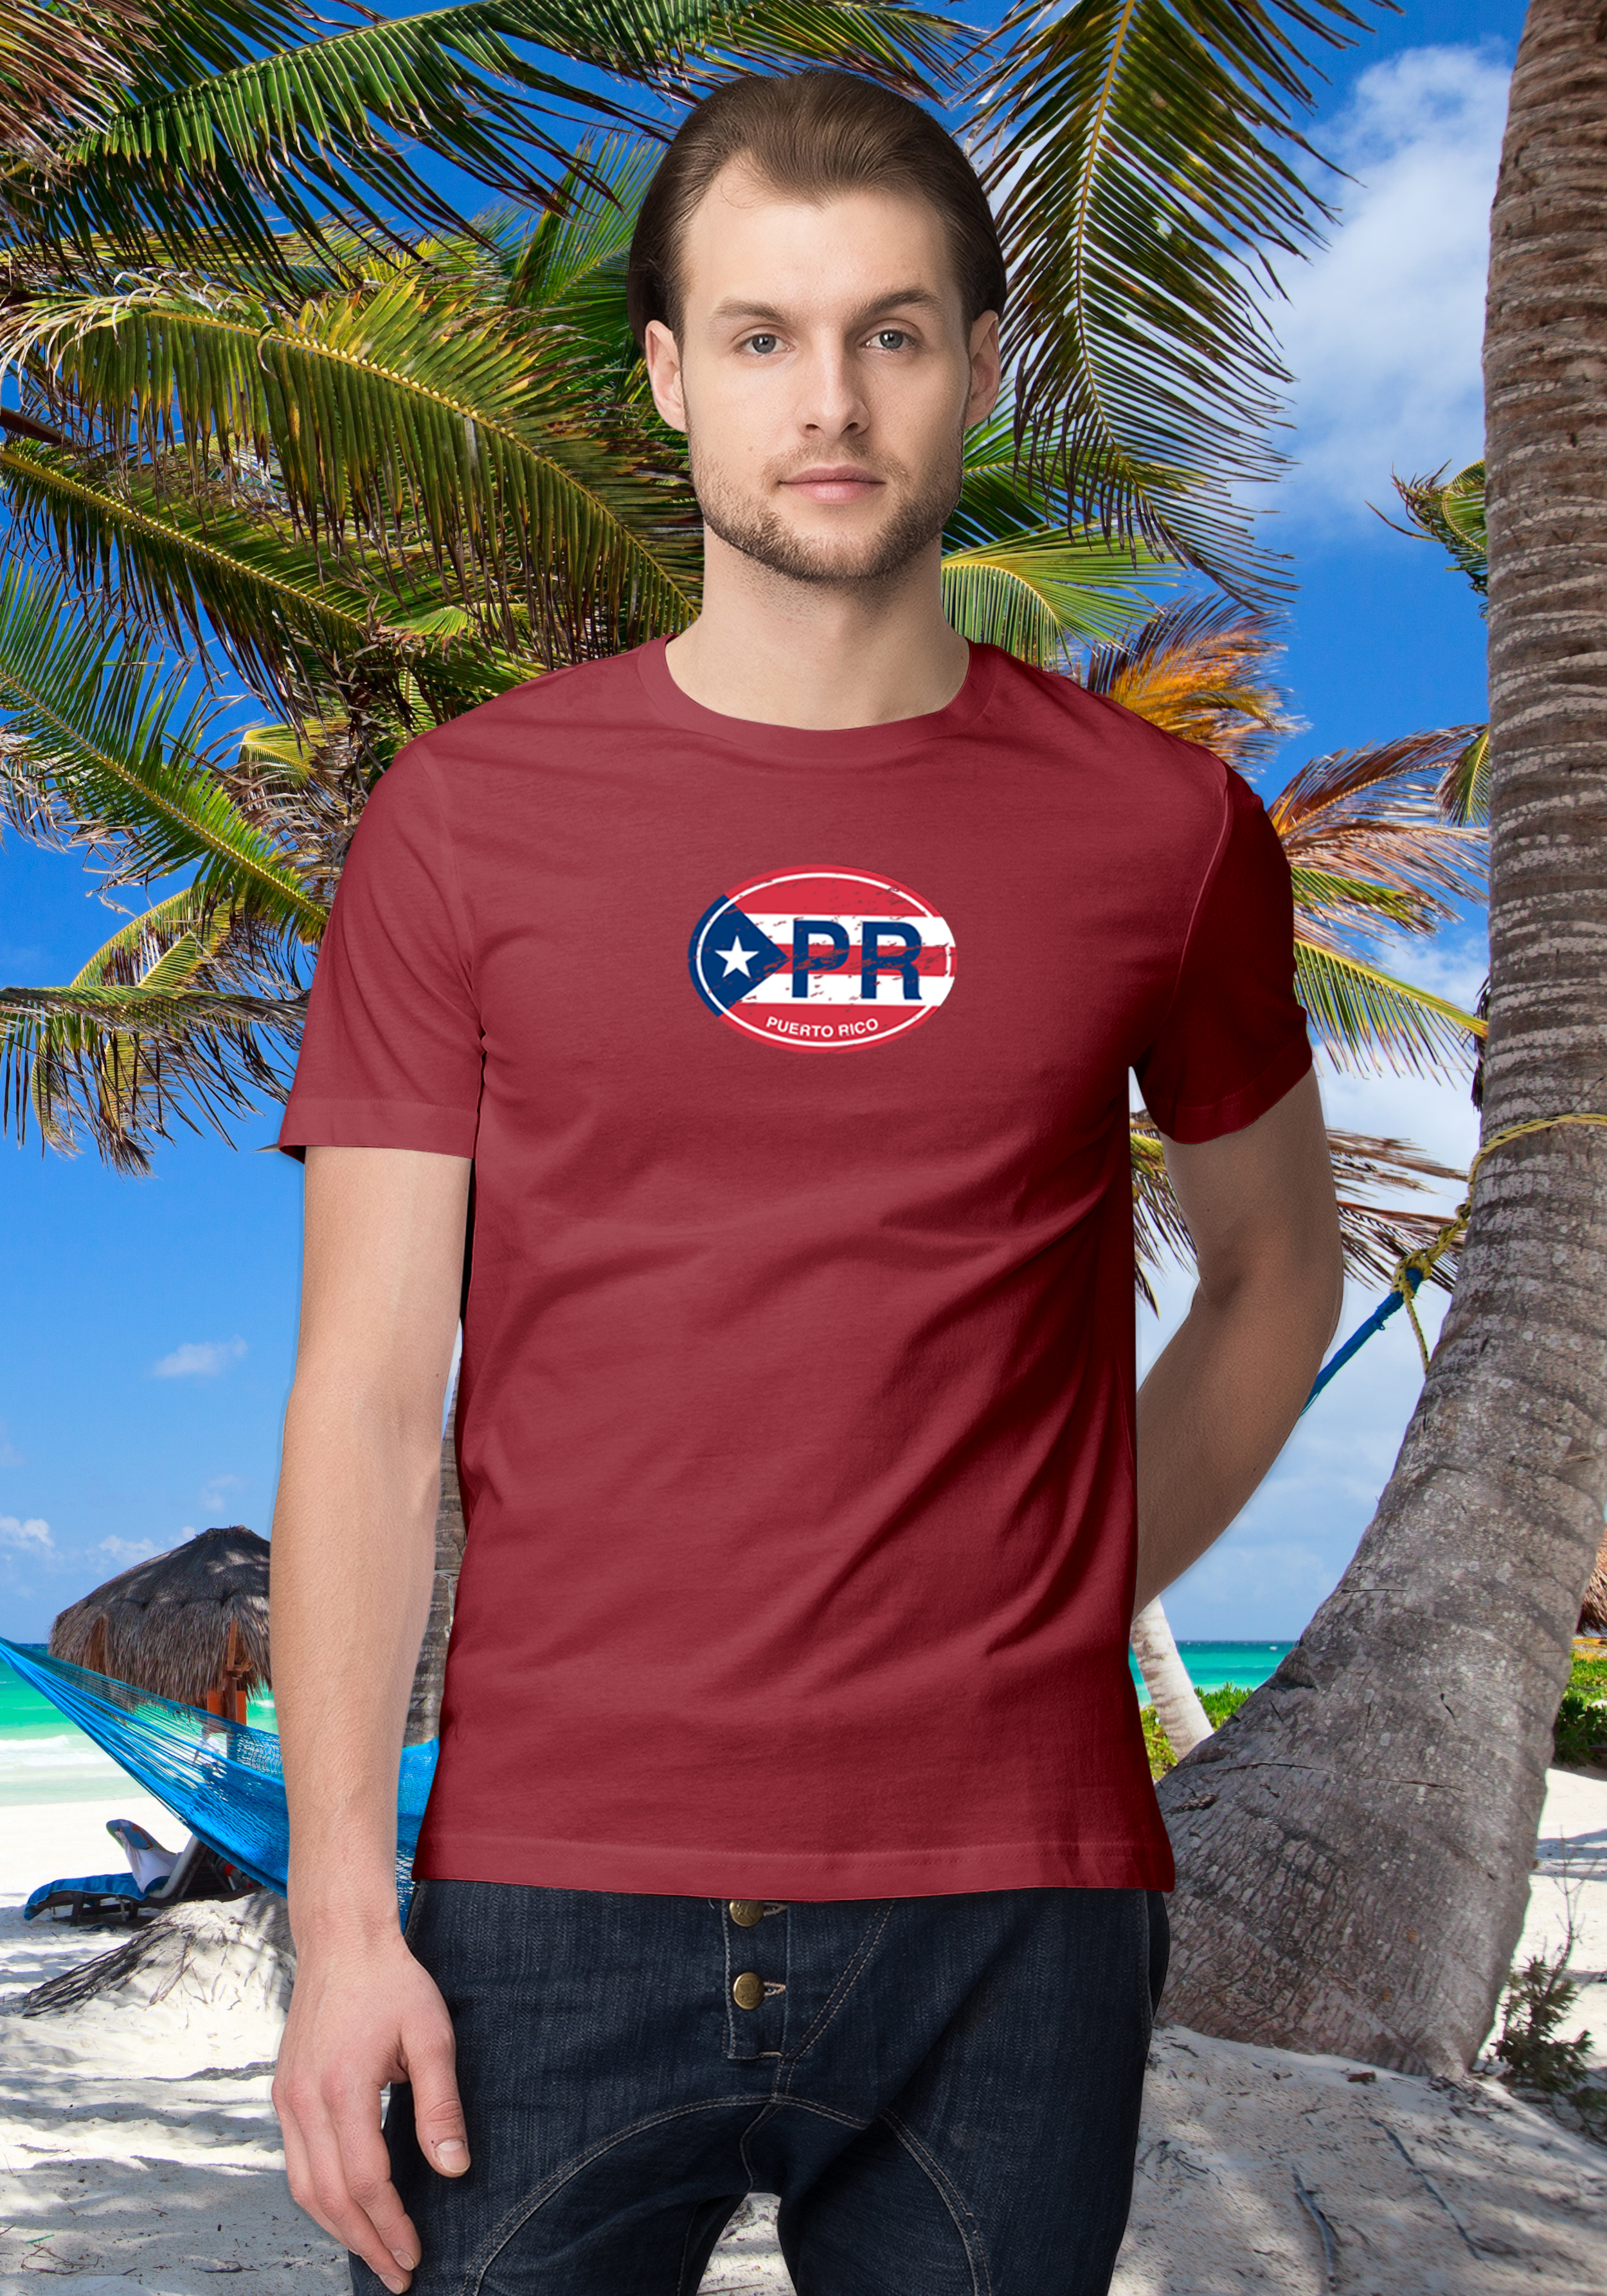 Puerto Rico Men's Flag T-Shirt Souvenirs - My Destination Location